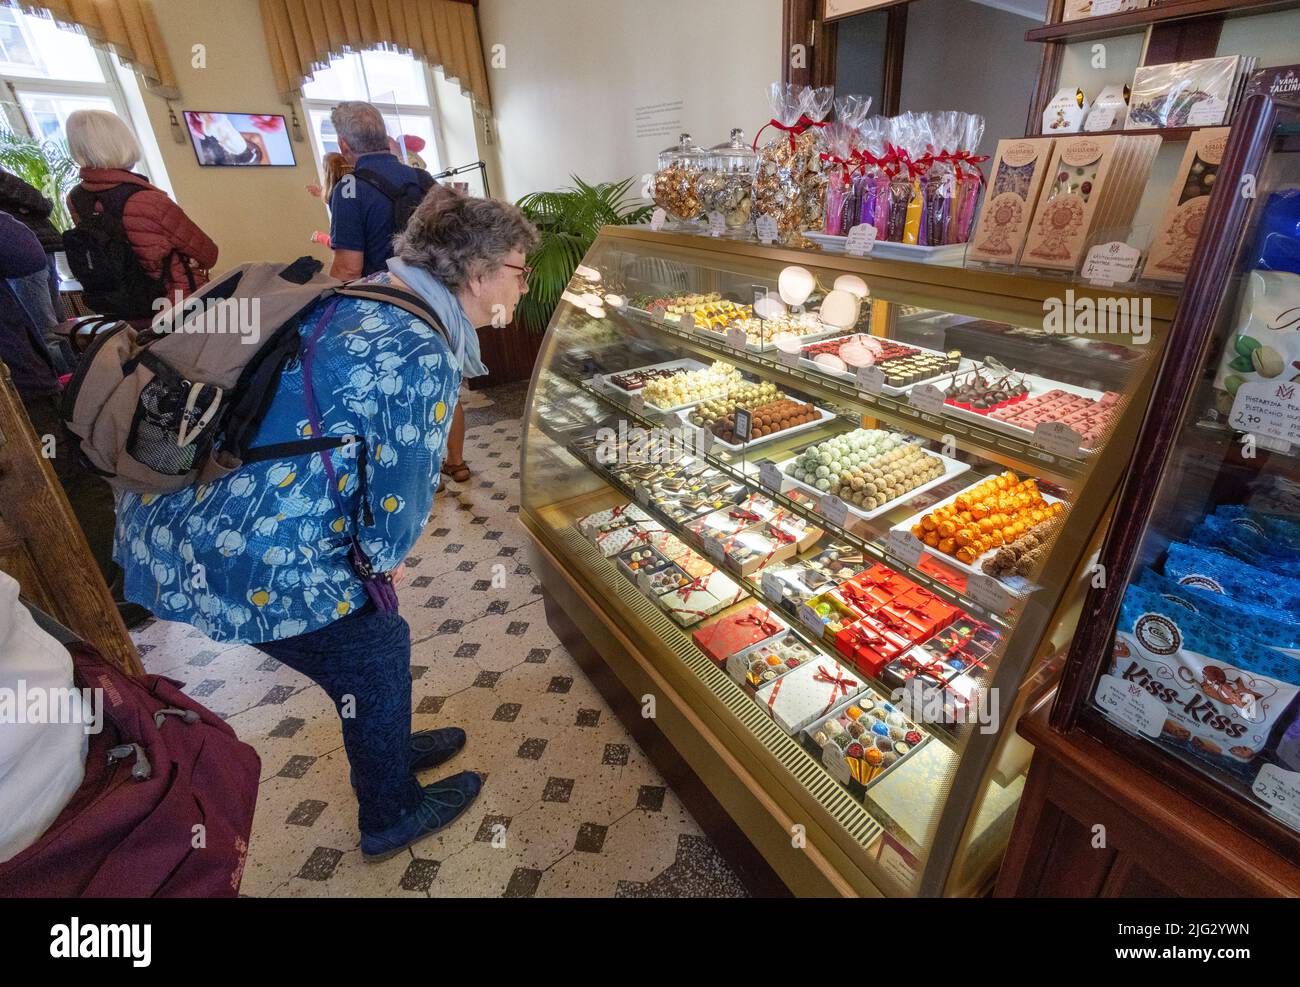 Estonia Tourist; eine Frau, die Süßigkeiten, Schokolade und Marzipan-Süßigkeiten einkauft, Cafe Maiasmokk interior, Tallinns Altstadt, Tallinn Estland Stockfoto